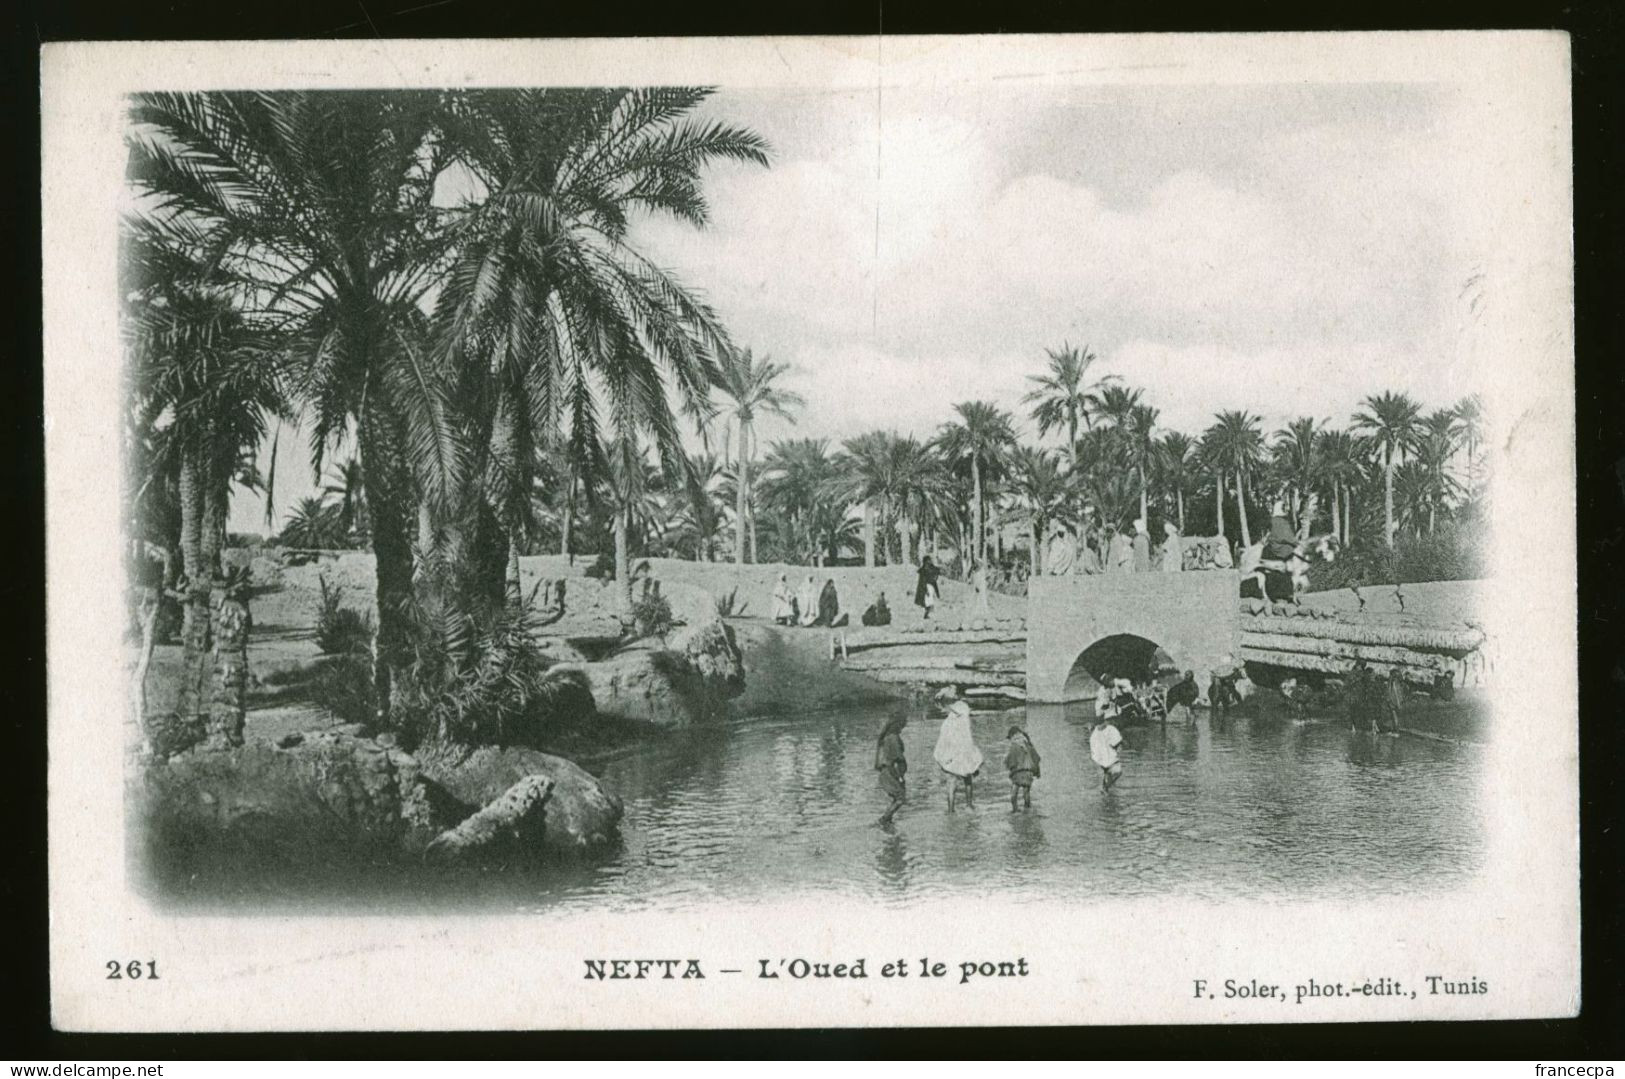 938 - TUNISIE - NEFTA - L'Oued Et Le Pont  - DOS NON DIVISE - Tunisia